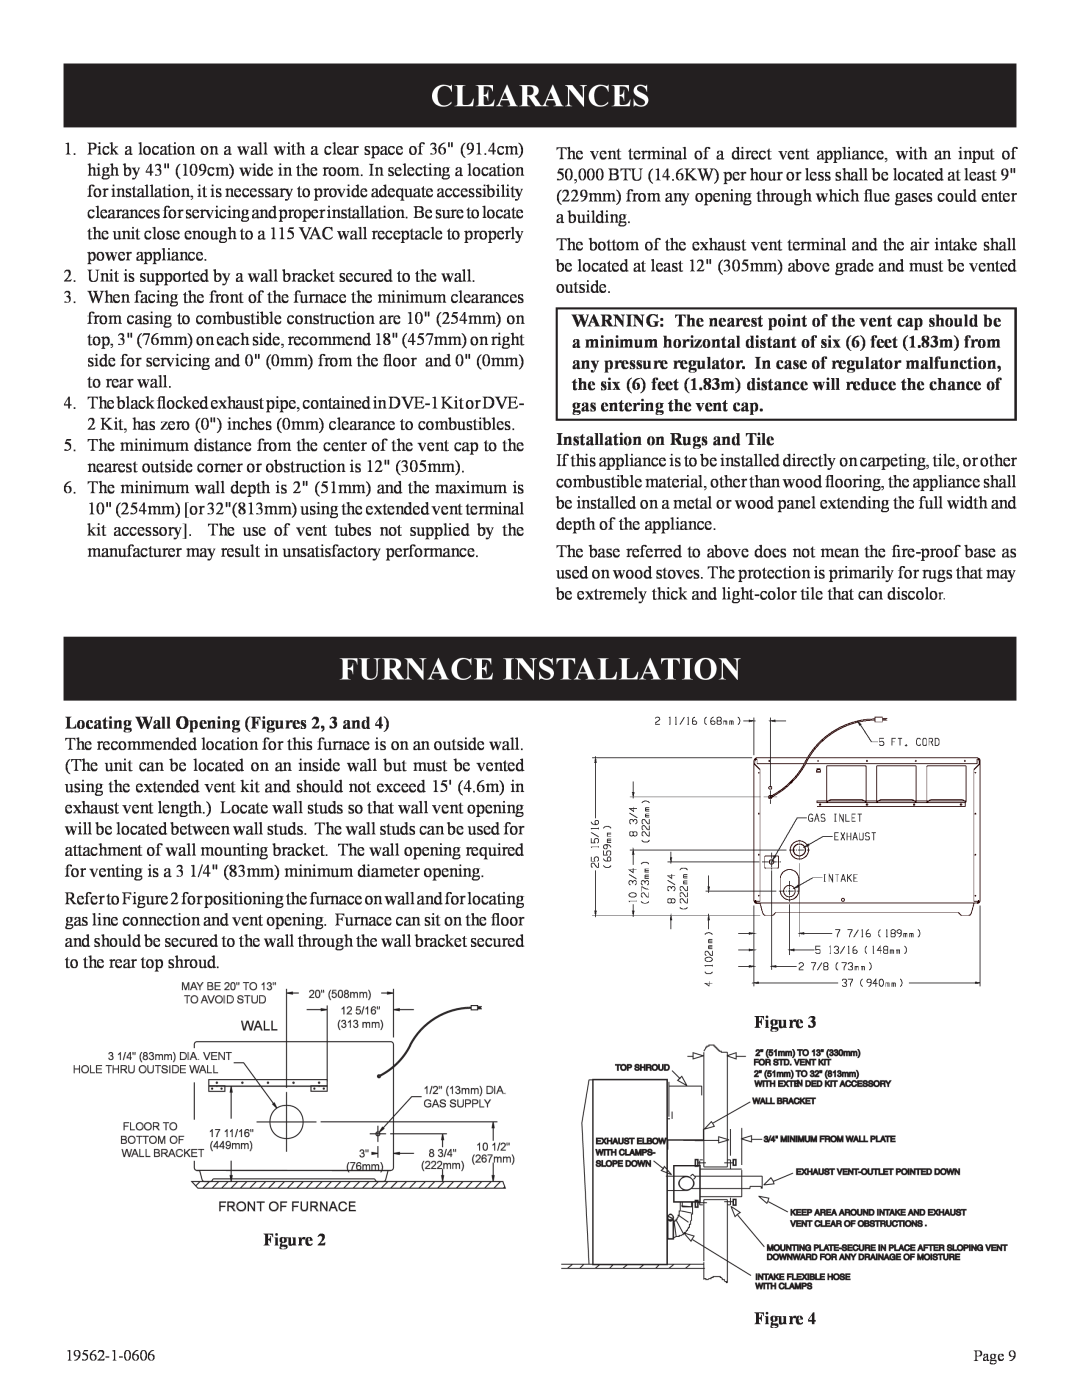 Langley/Empire DV-40E-5, DV-20E-5 installation instructions Clearances, Furnace Installation, Installation on Rugs and Tile 